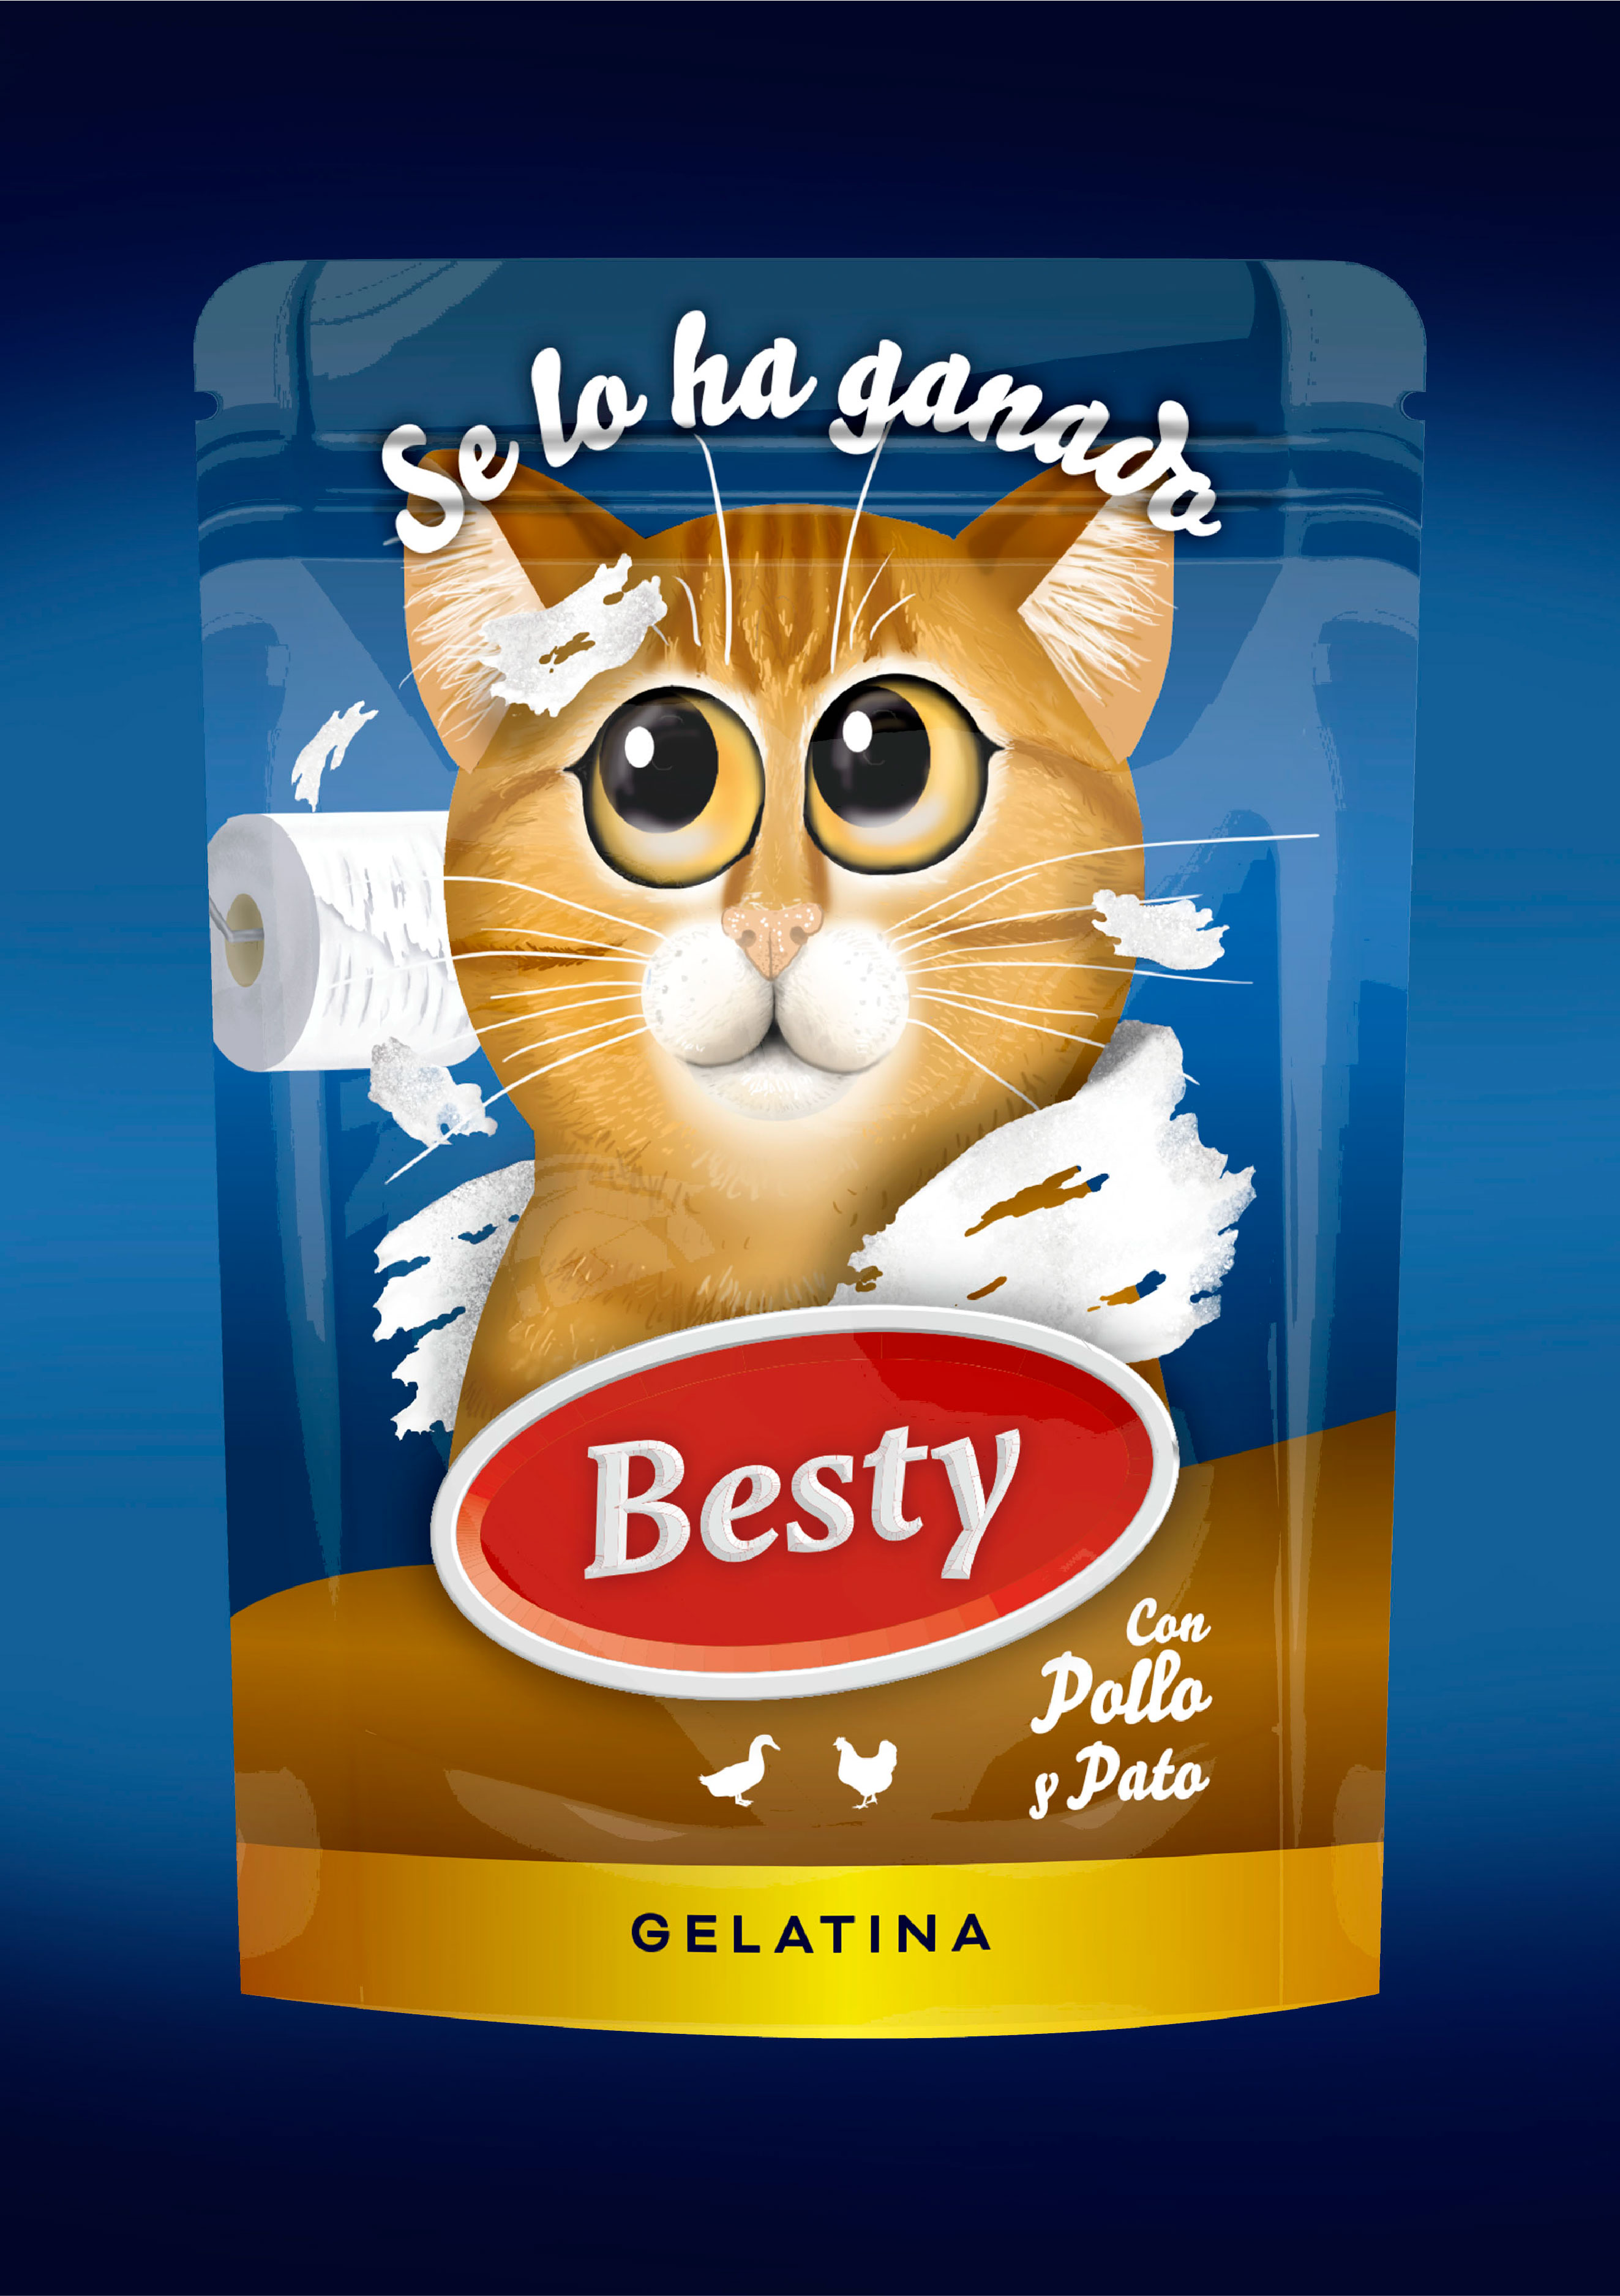 Besty Wet Cat’s Food Packaging Design